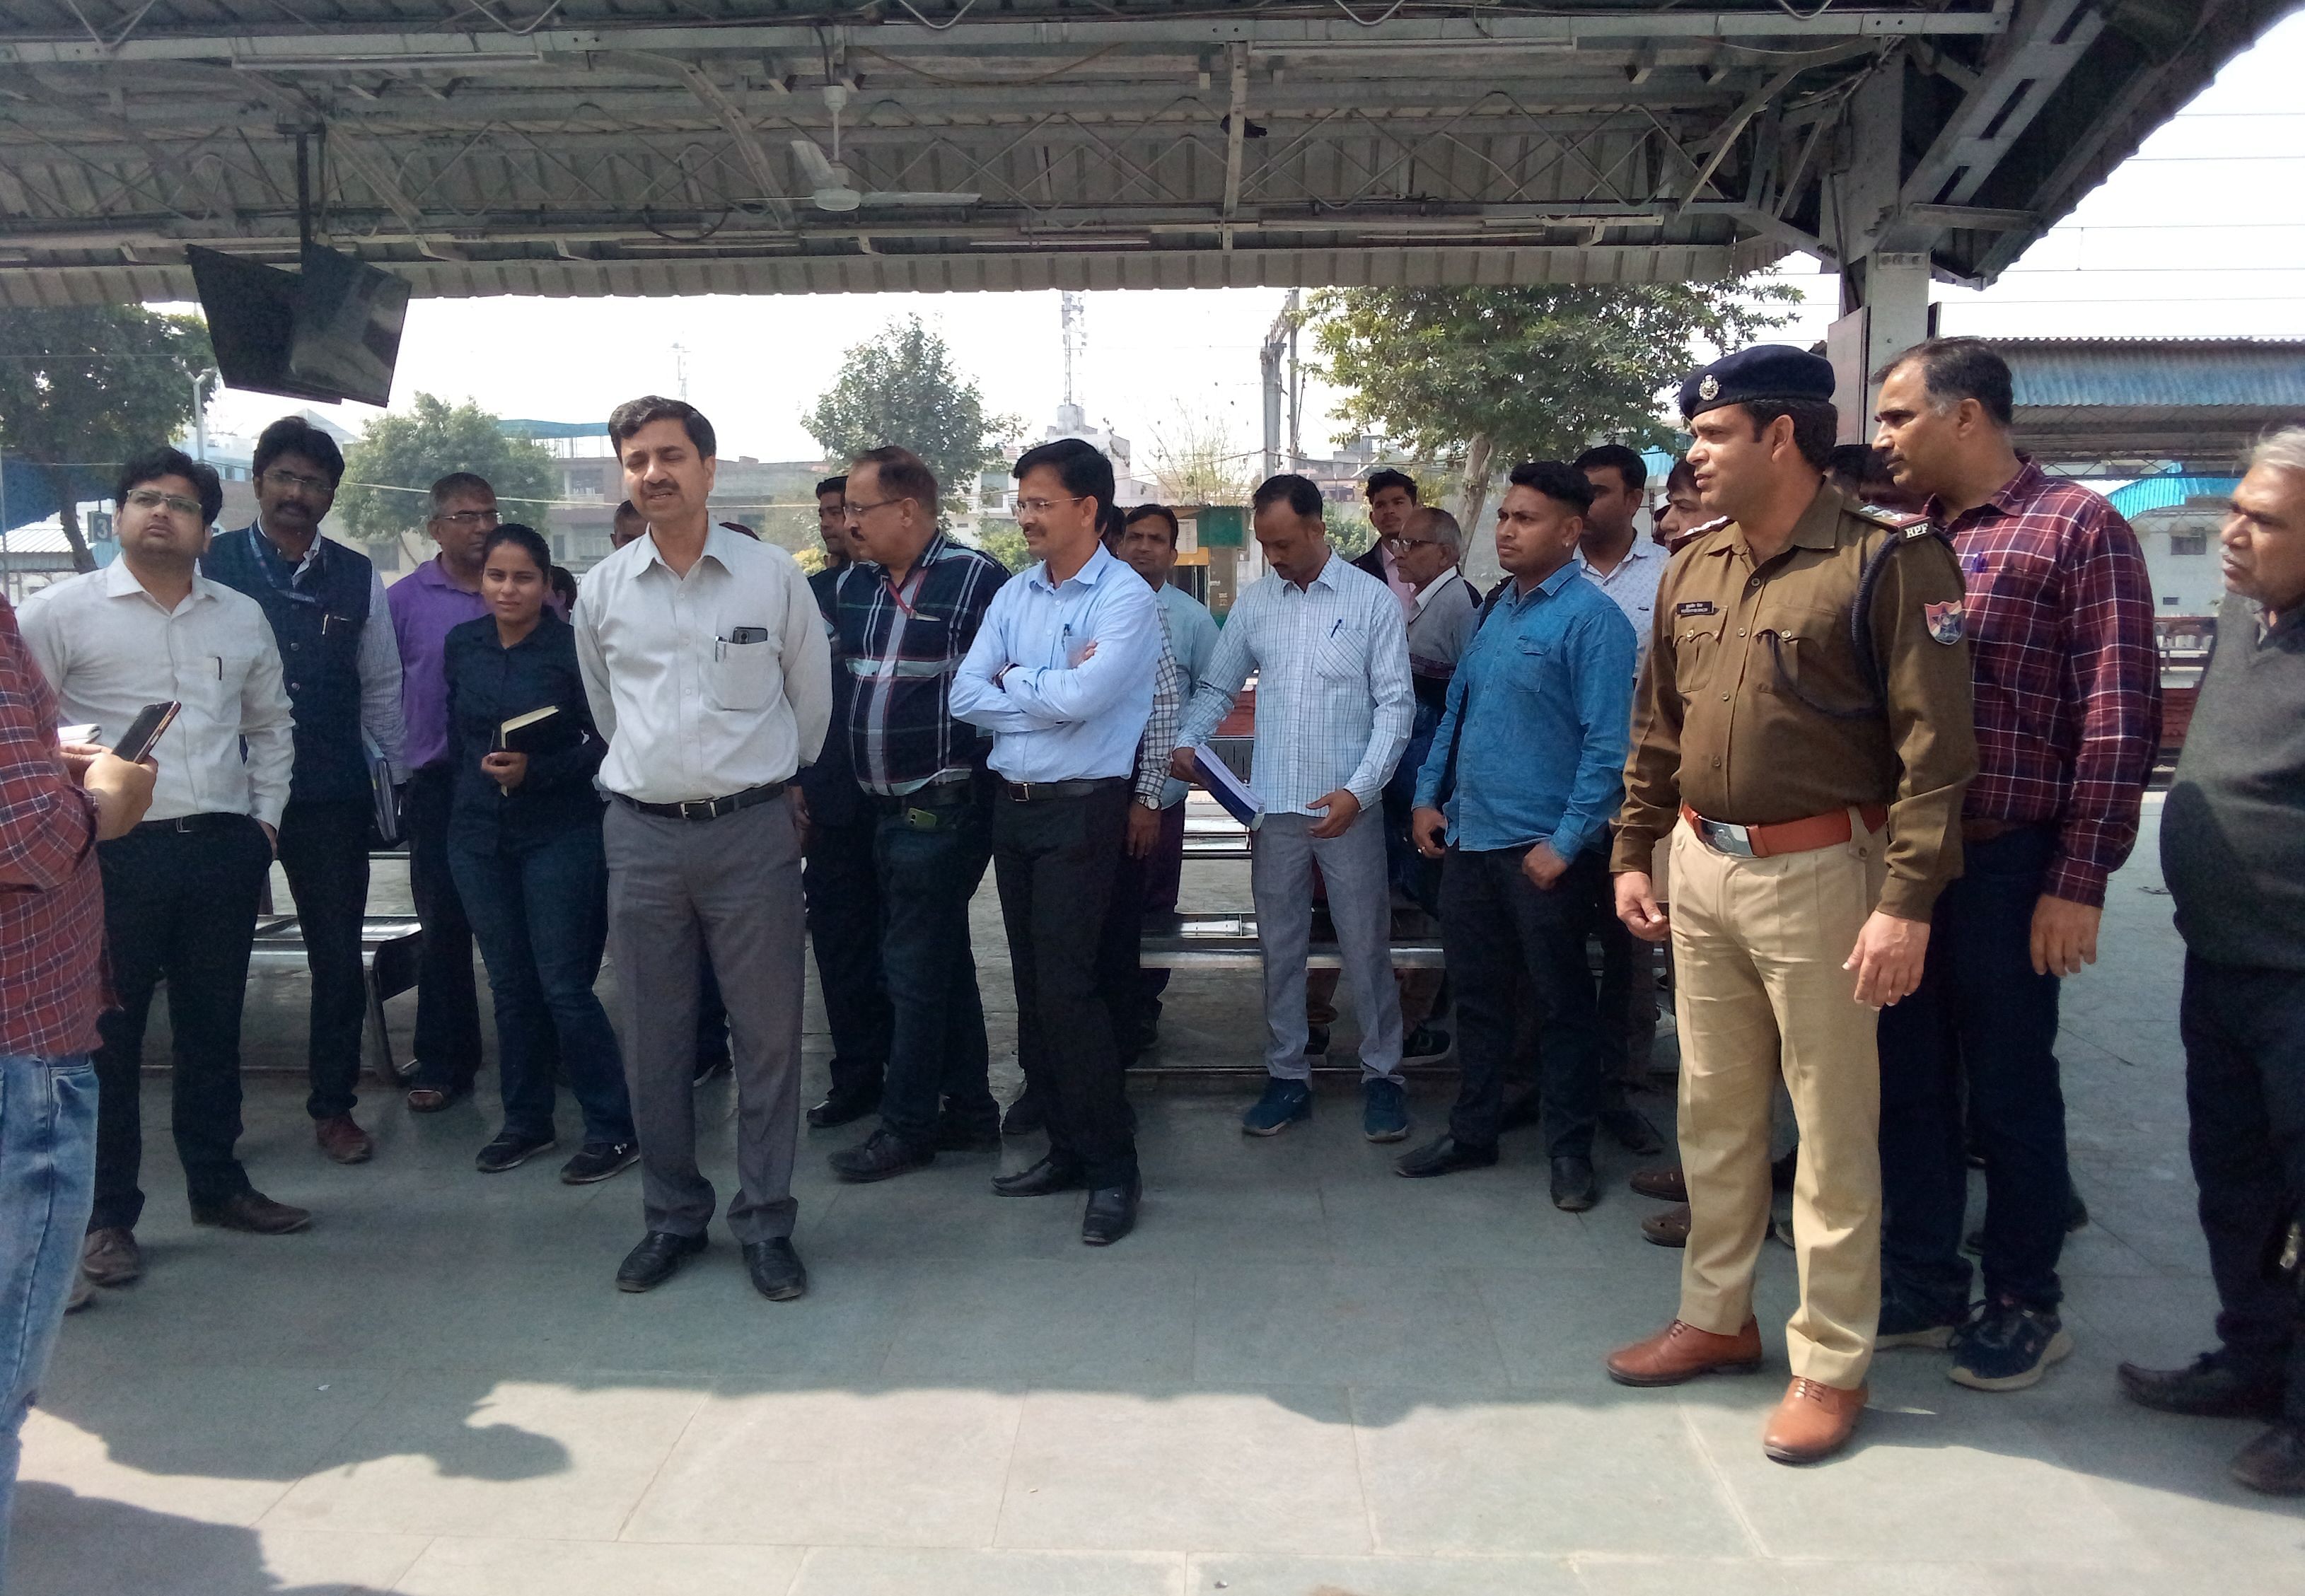 फोटो 05 - सोनीपत स्टेशन पर निरीक्षण के दौरान अधिकारियों से व्यवस्थाओं की जानकारी लें दिल्ली मान